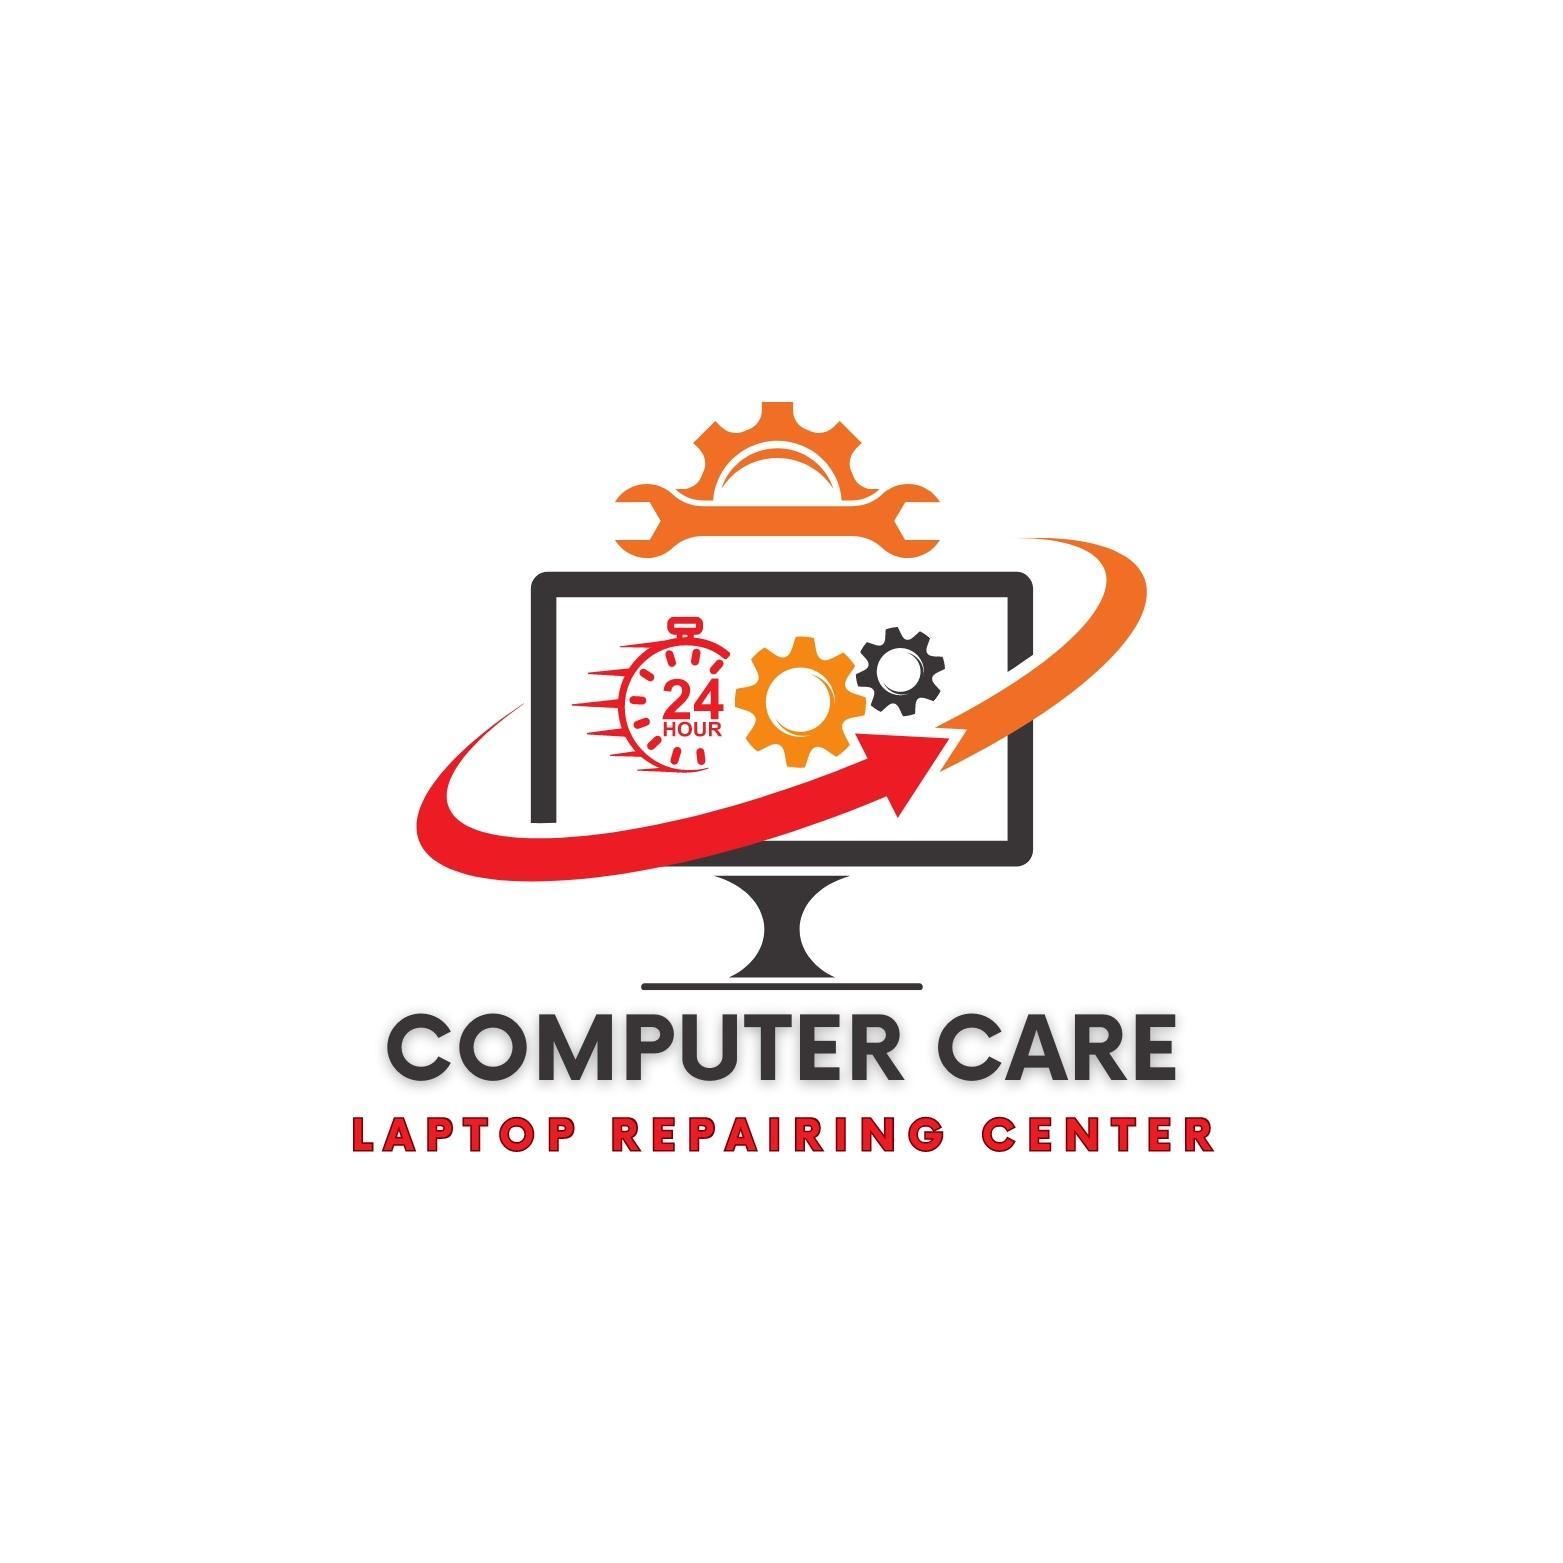 Computer Care Laptop Repairing Center